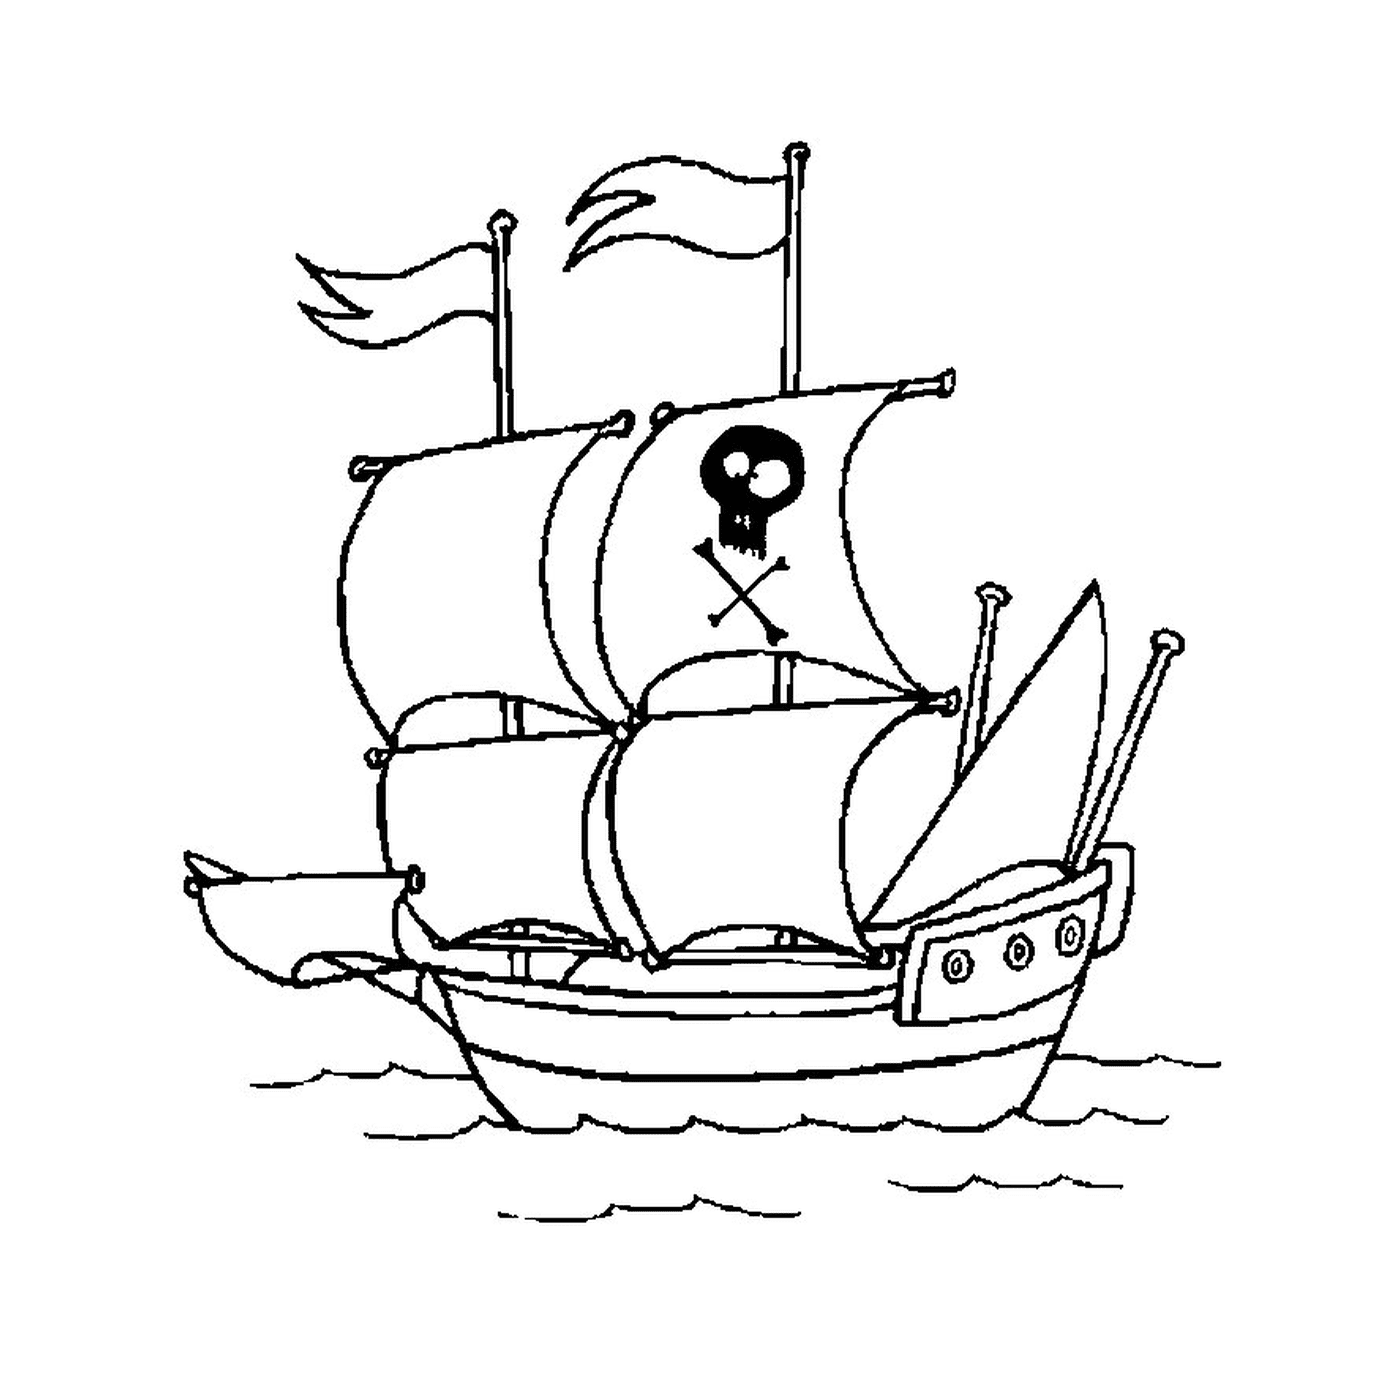  Una barca pirata con il capo della morte 